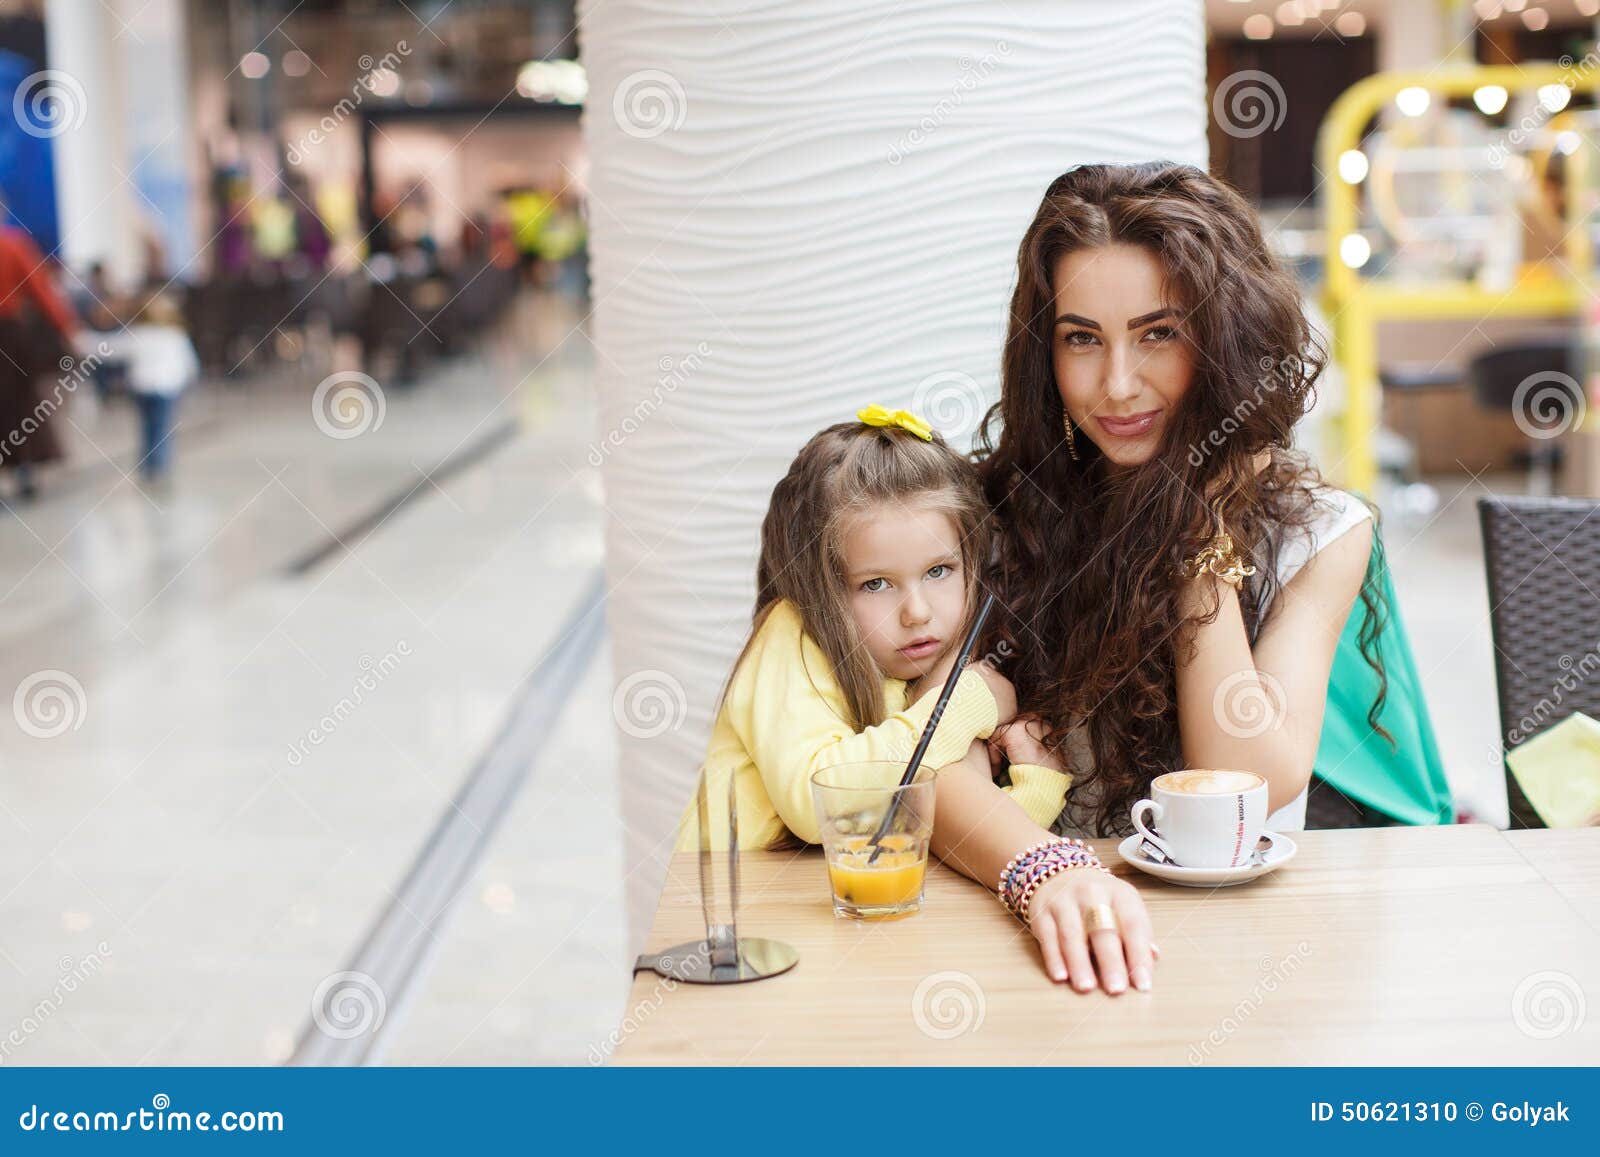 Дочь пьет что делать. Фотосессия с дочкой в кафе. Мама и дочь в кафе. Фотосессия мама и дочка в кафе. В кафе с дочкой.